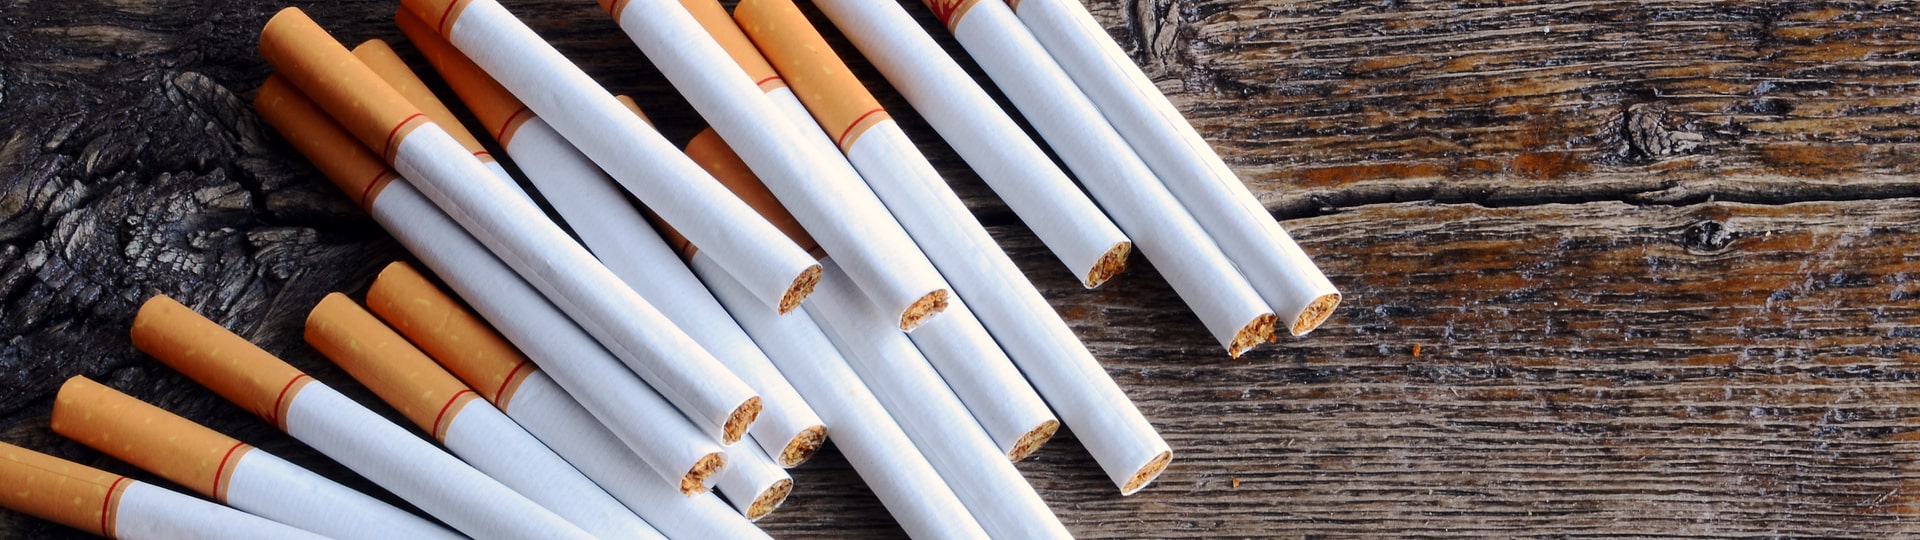 V Česku vzrostla spotřeba padělaných cigaret o 90 procent